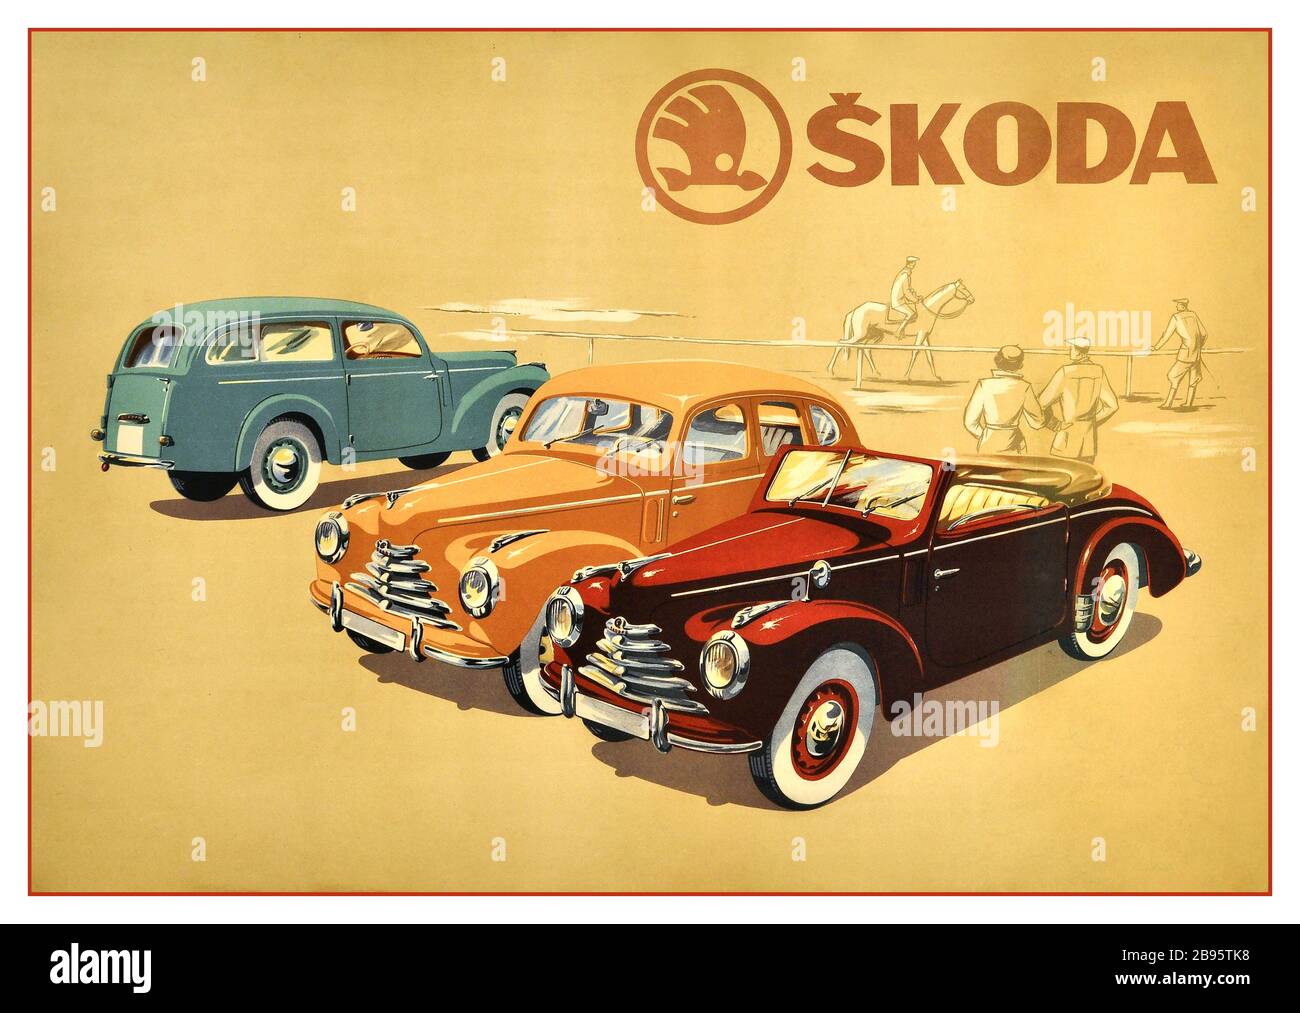 AFFICHE DE voiture SKODA Vintage des années 1950 affichant une publicité de voiture Skoda avec trois modèles de voiture alignés - un cabriolet, berline et wagon de station avec un cavalier et des spectateurs en arrière-plan. Skoda Auto est un constructeur automobile tchèque fondé en 1895 et est l'une des cinq plus anciennes sociétés de production automobile au monde avec une histoire ininterrompue (l'entreprise a ouvert sous le nom de Laurin & Klement, en exploitation à partir de 1895-1925 quand elle a été acquise par Skoda Works, En exploitation à partir de 1925-2000, date à laquelle il a été acquis par le groupe Volkswagen). Imprimé par Neubert, Paha. Tchécoslovaquie, c 1950, Banque D'Images